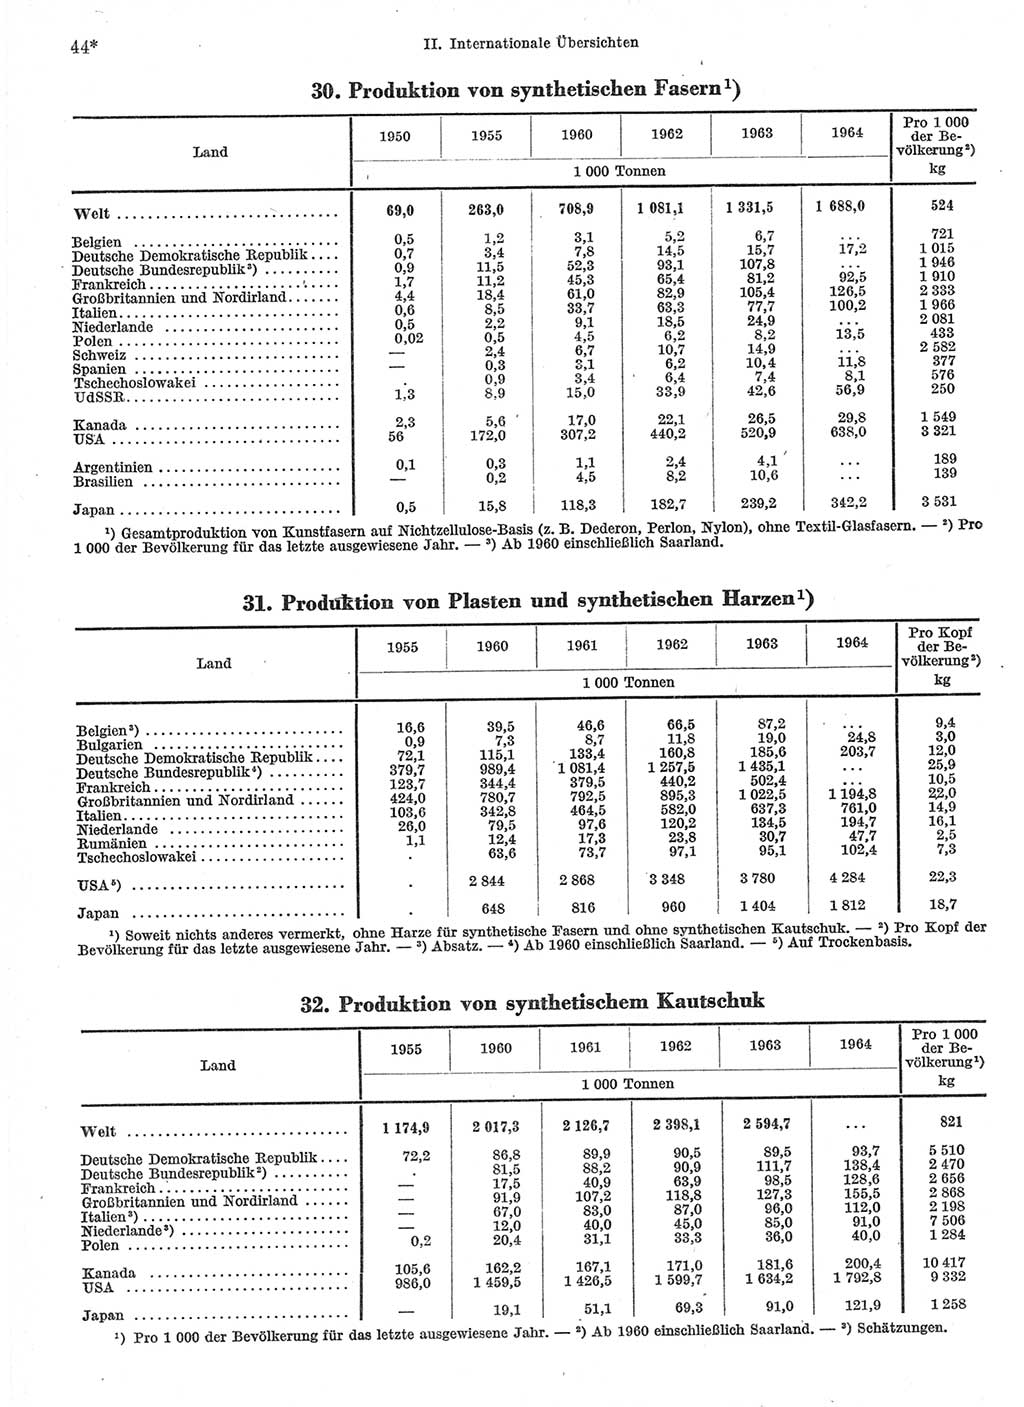 Statistisches Jahrbuch der Deutschen Demokratischen Republik (DDR) 1966, Seite 44 (Stat. Jb. DDR 1966, S. 44)